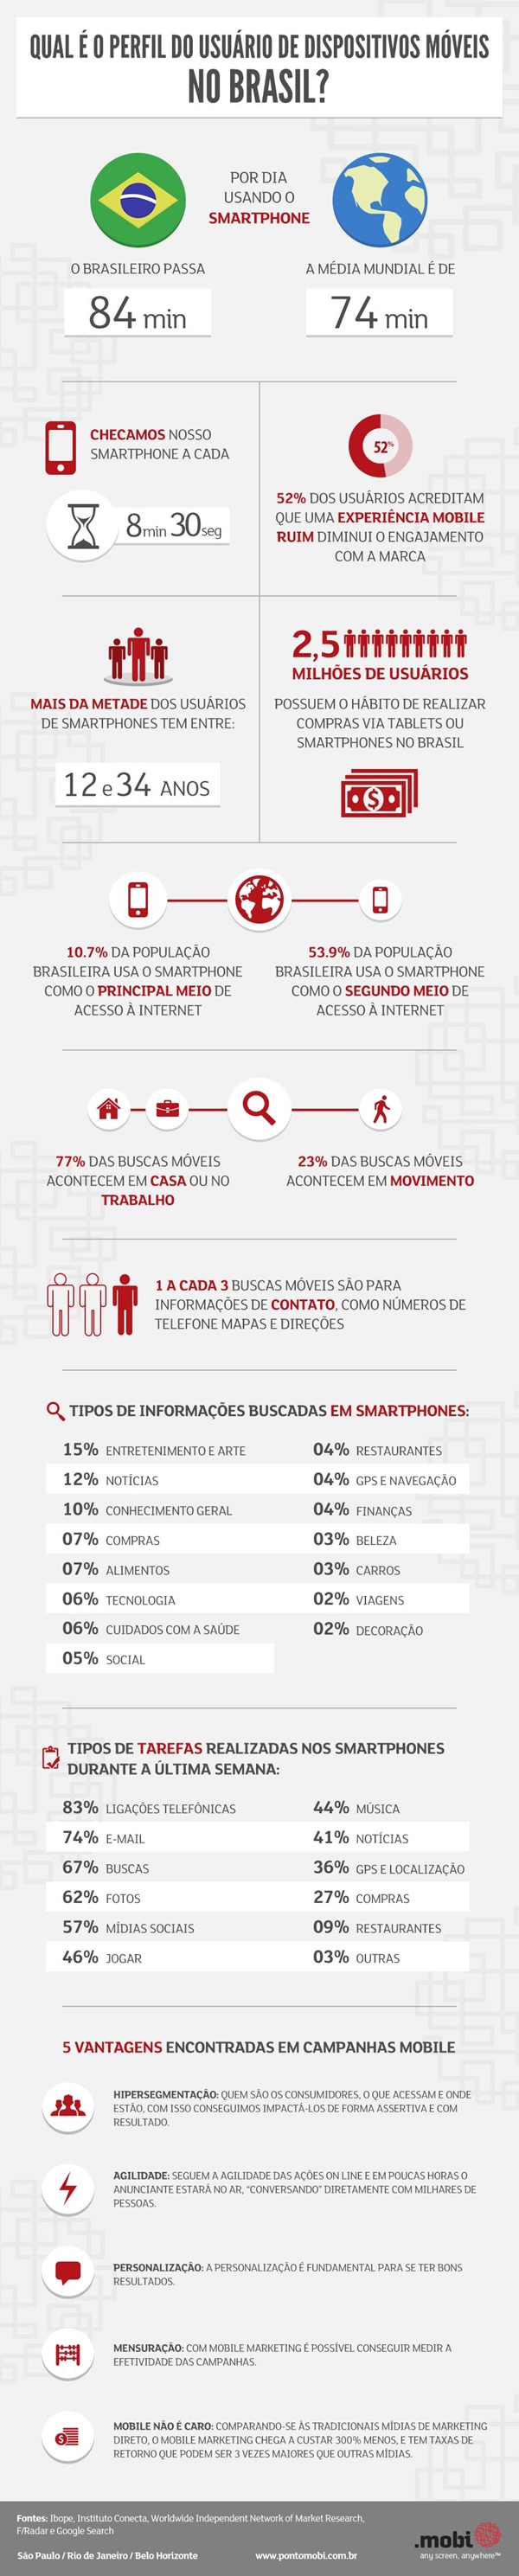 Infografico-o-perfil-e-os-habitos-dos-usuarios-de-mobile-no-brasil-televendas-cobranca-interna